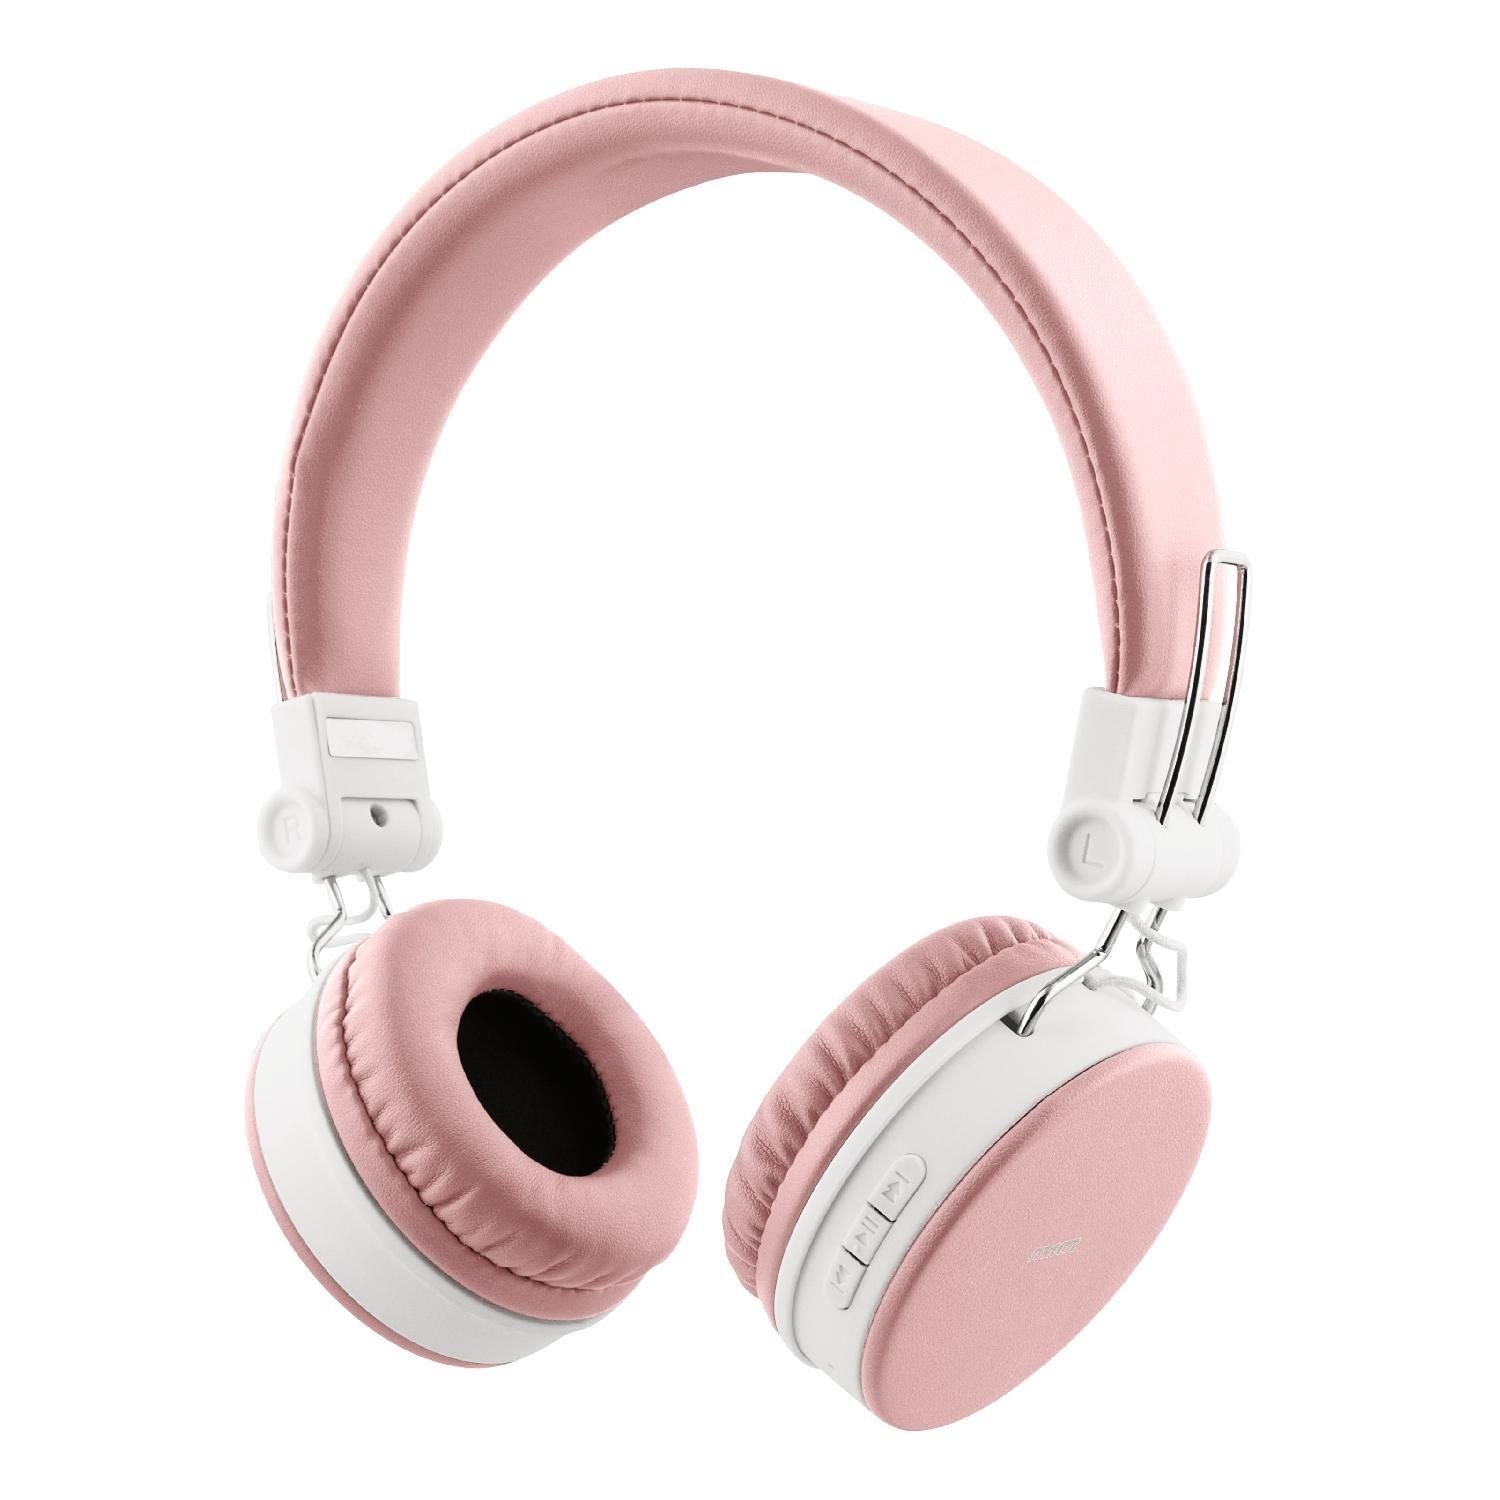 STREETZ Bluetooth Kopfhörer 22Std Spielzeit Kabel Jahre faltbar AUX inkl. Herstellergarantie) pink 5 Kopfhörer bis (Bluetooth, zu